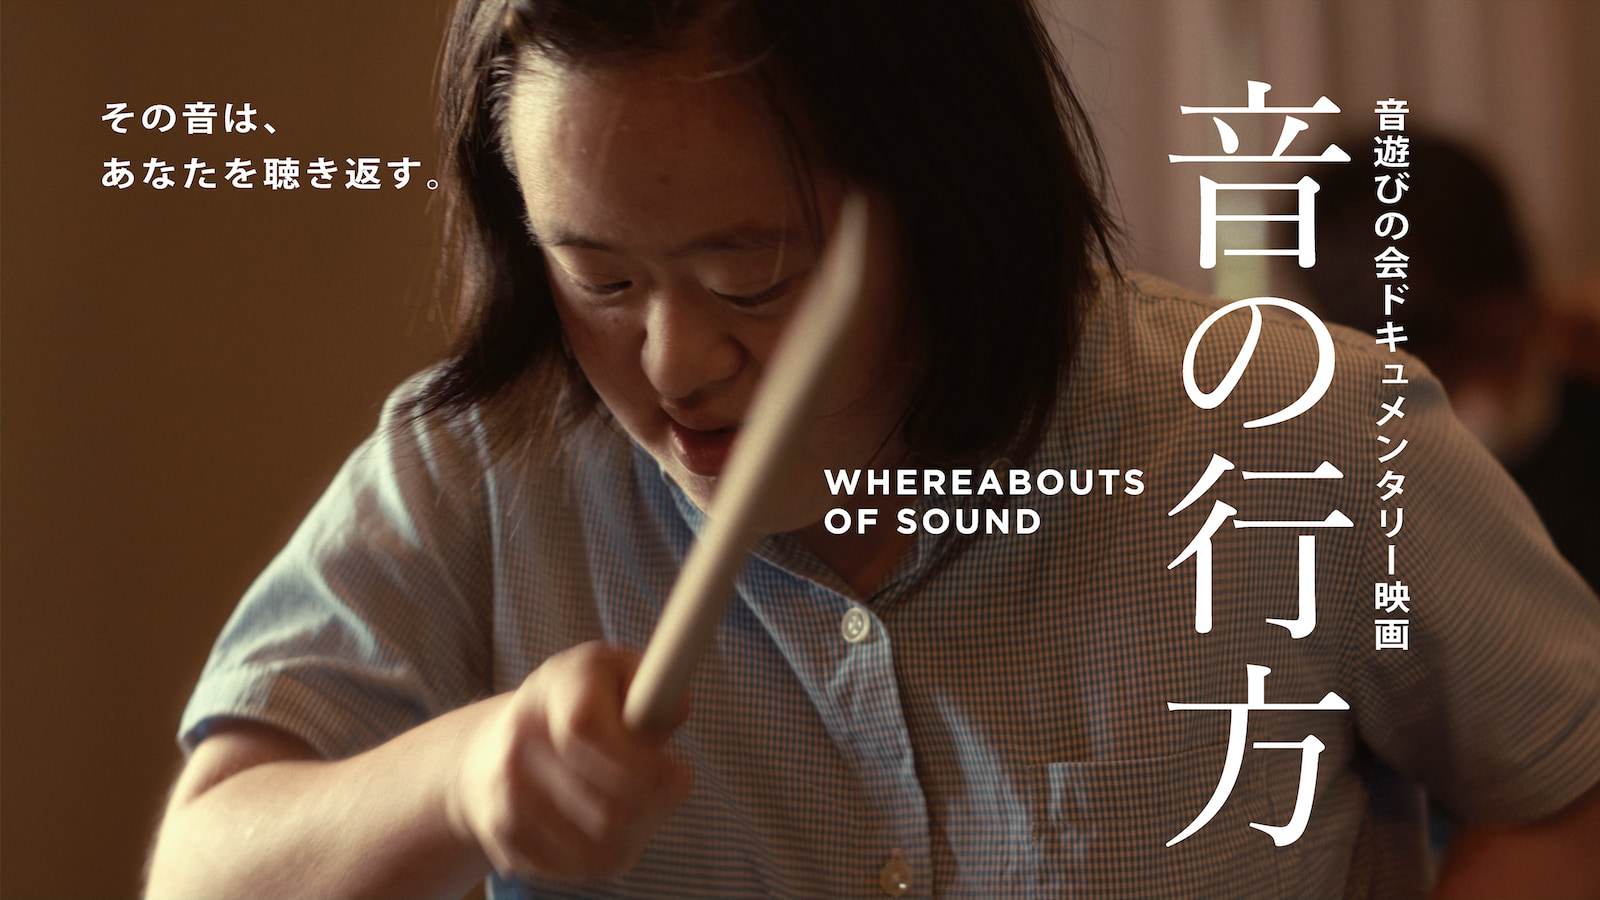 音遊びの会ドキュメンタリー映画『音の行方』のメインビジュアル。女性が打楽器のバチを真剣な表情で持っている画像。